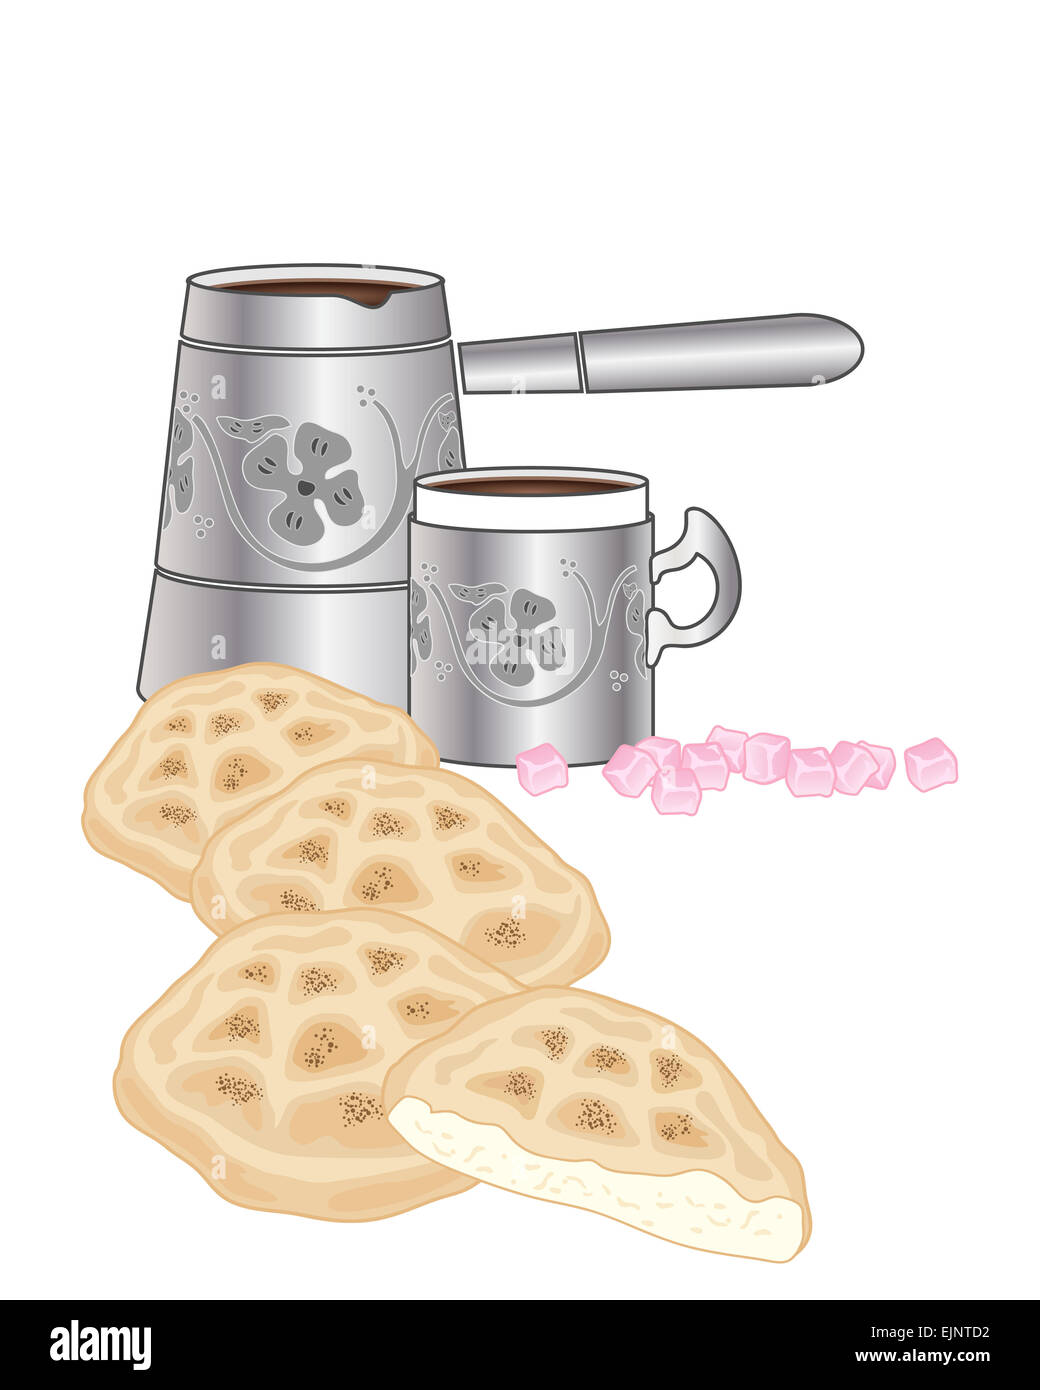 Une illustration de pain plat traditionnel turc avec la verseuse et mug avec Loukoum rose sur fond blanc Banque D'Images